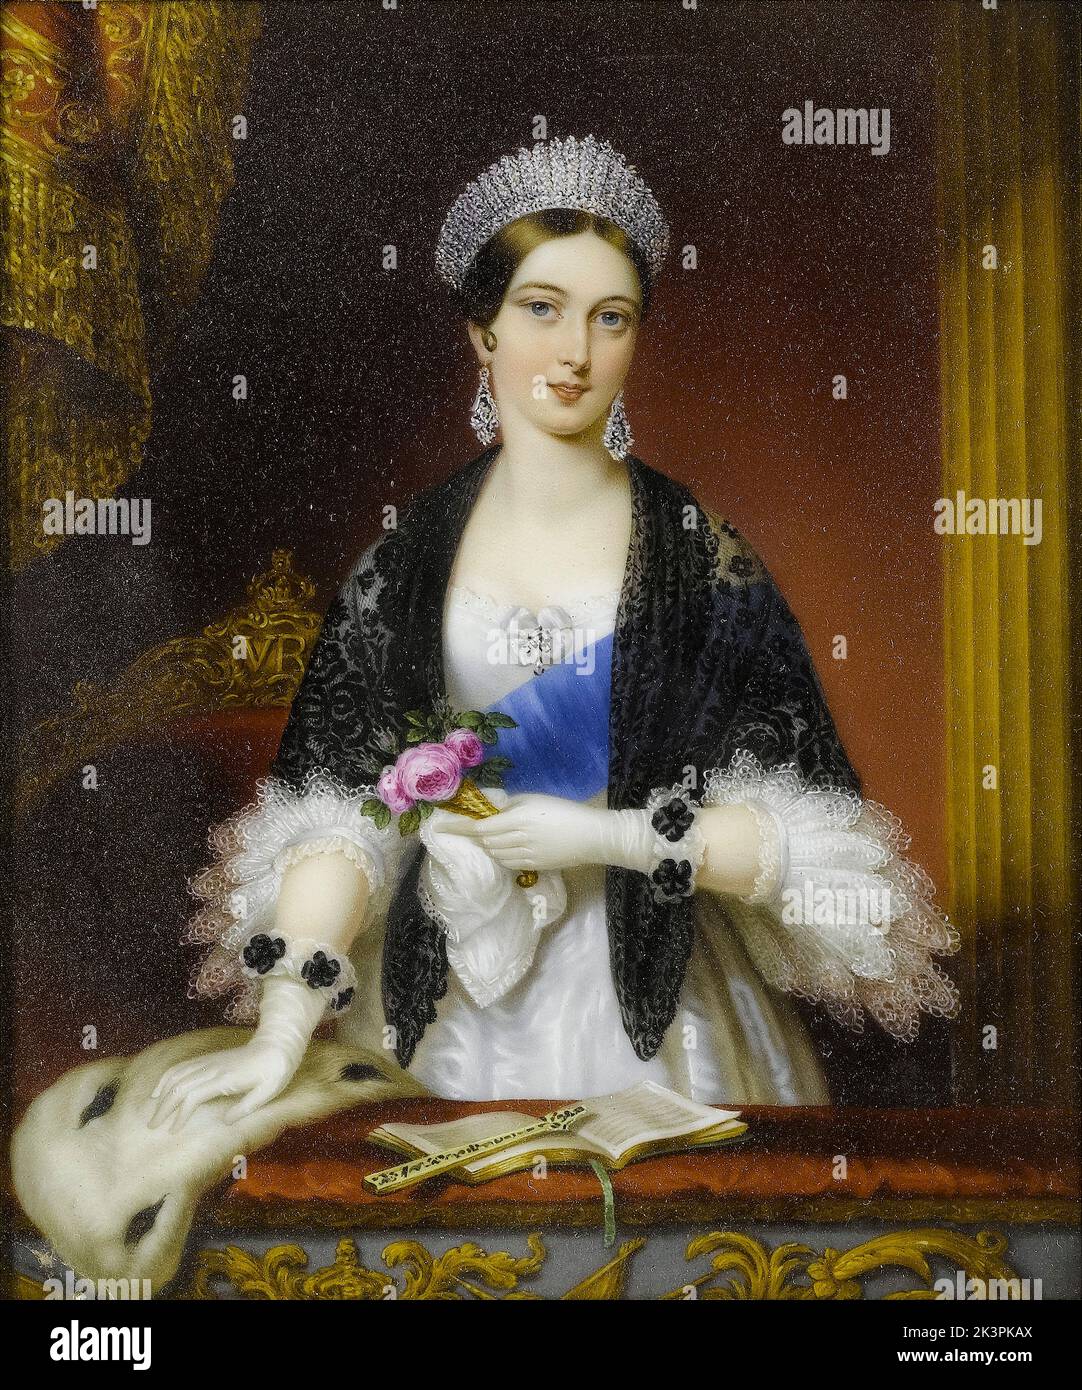 La reine Victoria (1819-1901), la reine de Grande-Bretagne et d'Irlande (1837-1901) au théâtre, portrait miniature sur porcelaine de Sophie Liénard après Edmund Thomas Parris, 1842-1845 Banque D'Images